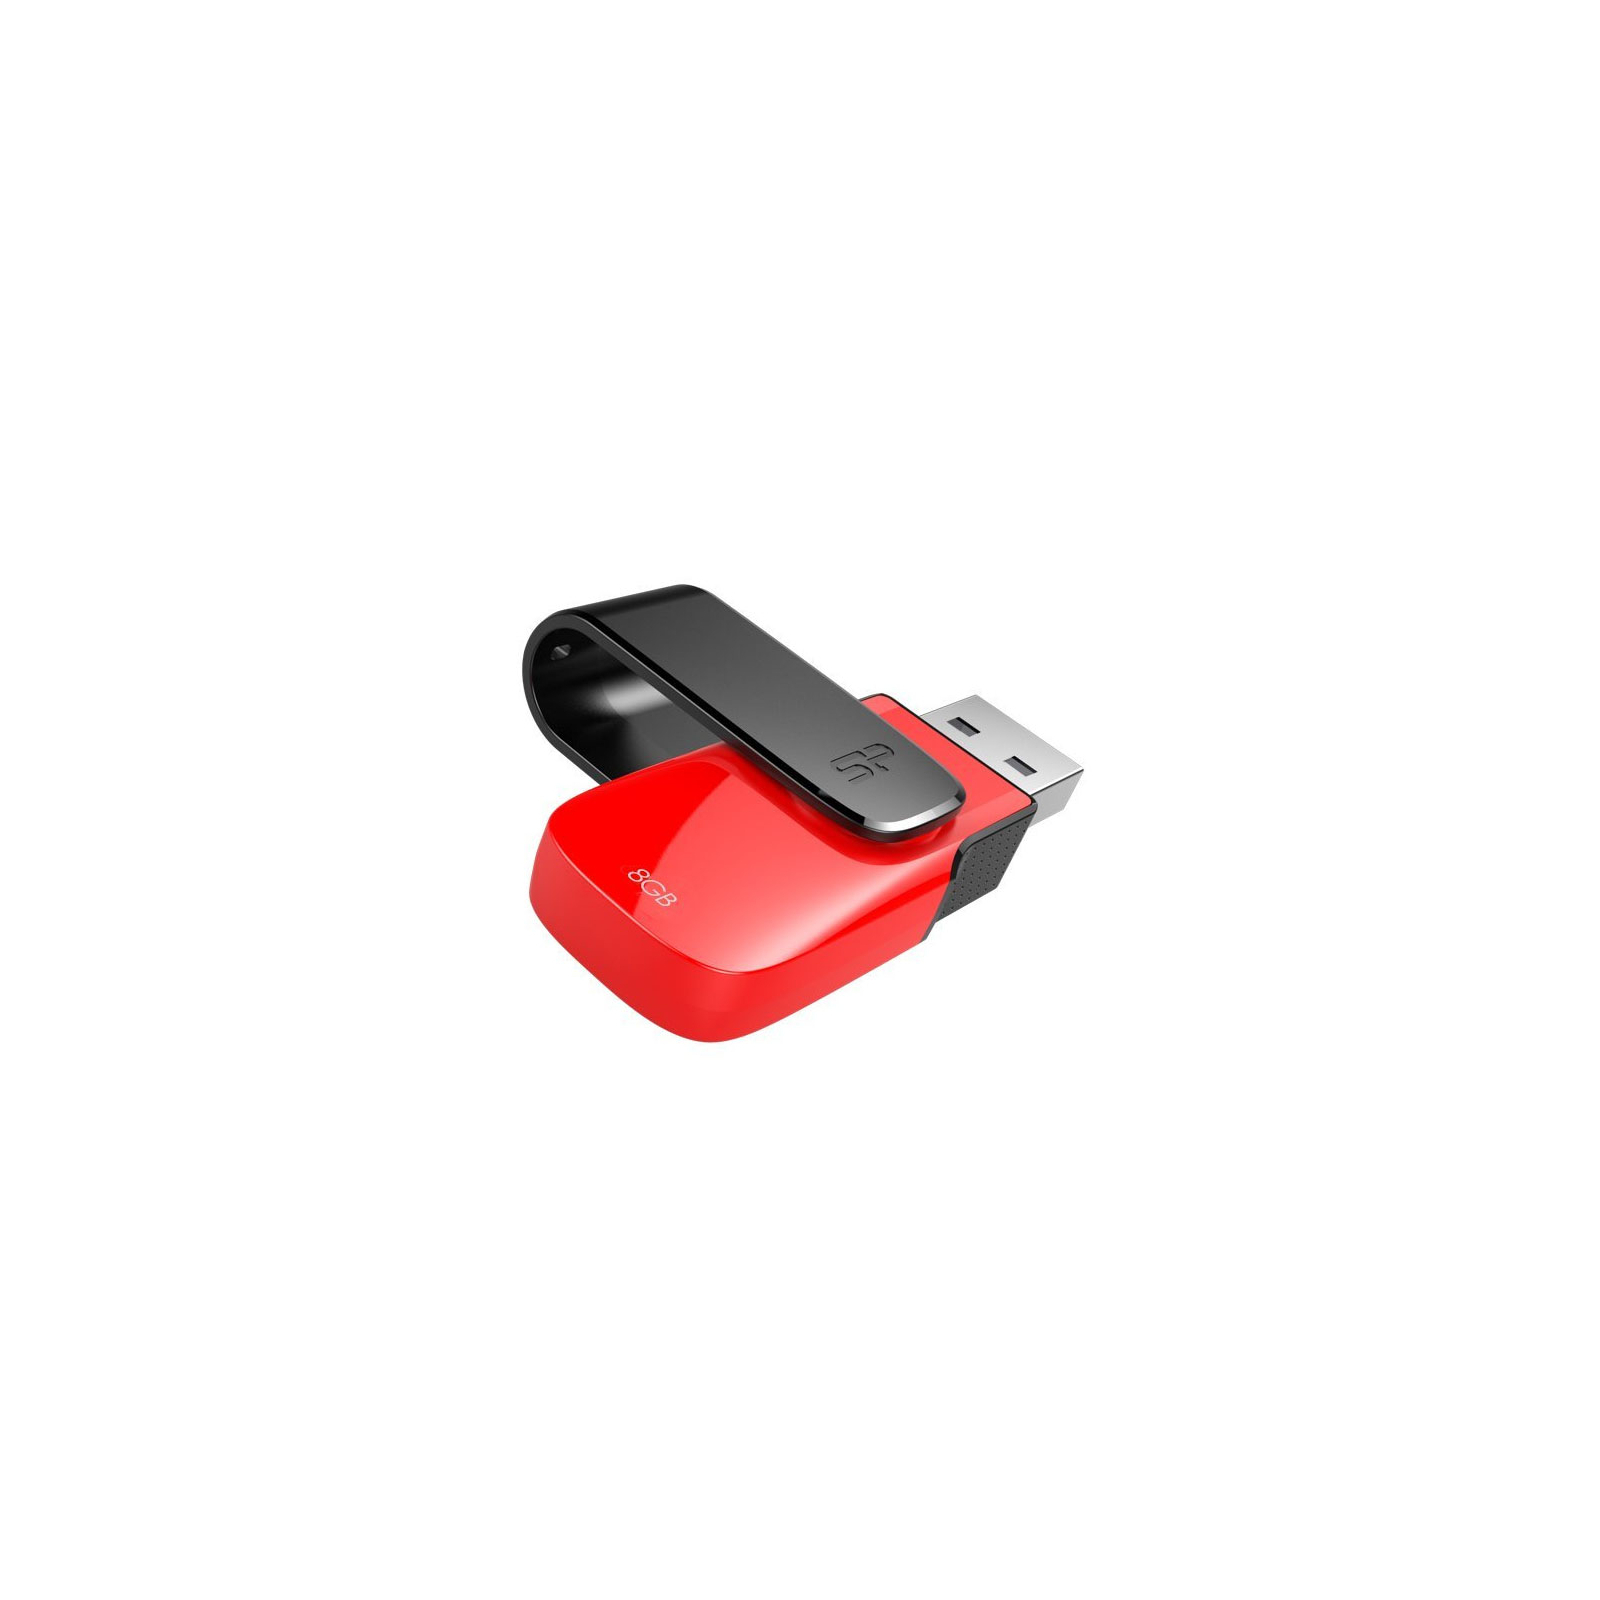 USB флеш накопитель Silicon Power 8Gb Ultima U31 Red USB 2.0 (SP008GBUF2U31V1R) изображение 3